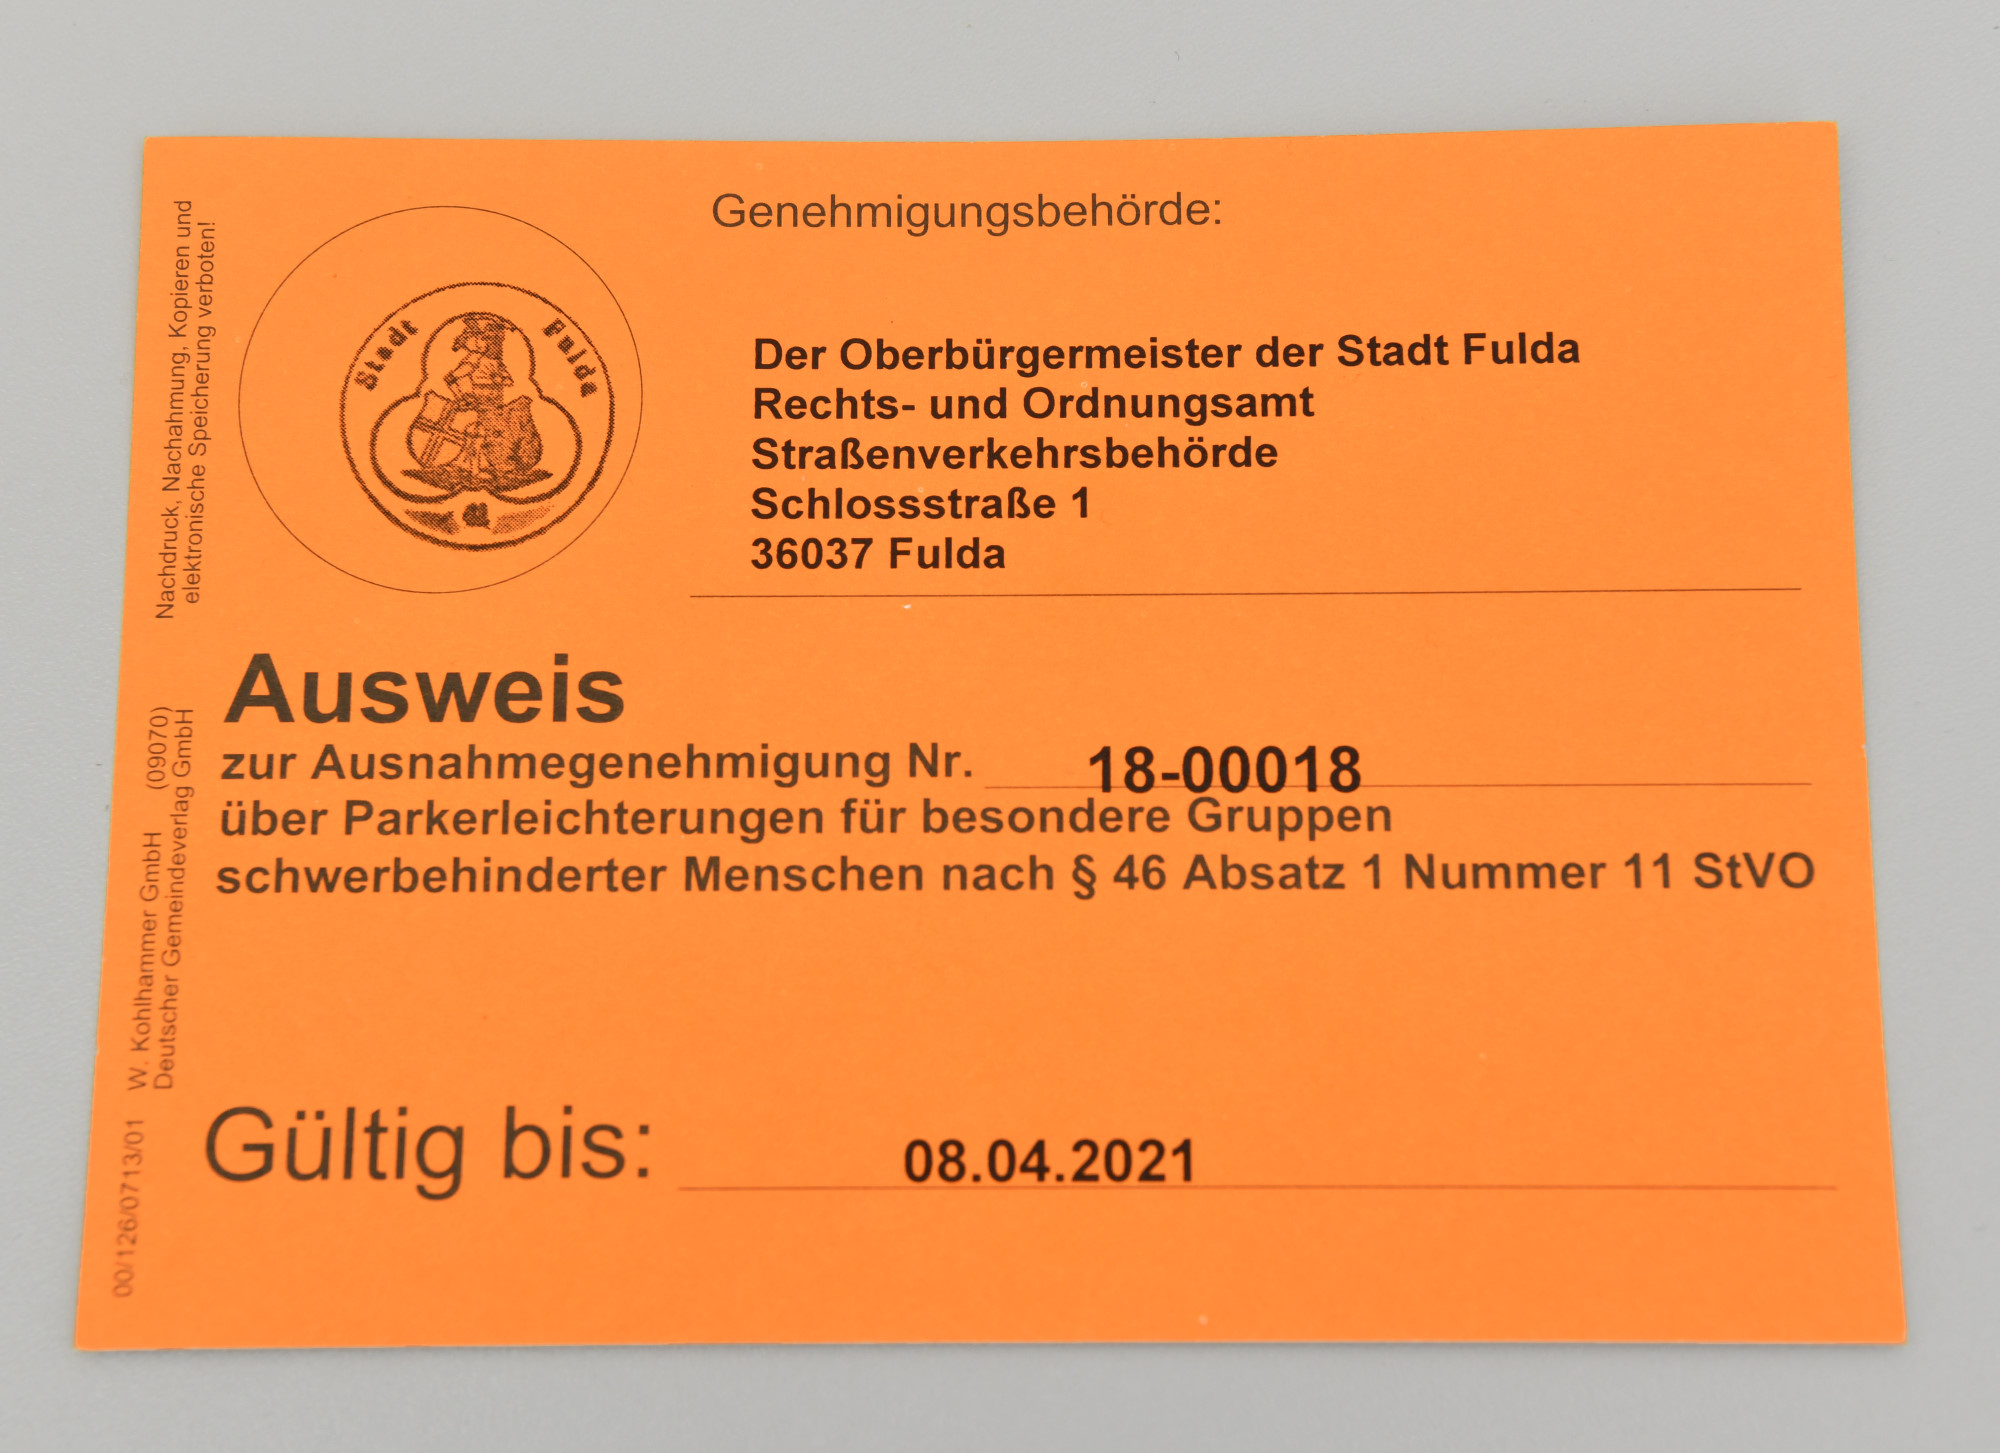 Fulda leichte Sprache: Park·ausweis für Menschen mit Behinderungen